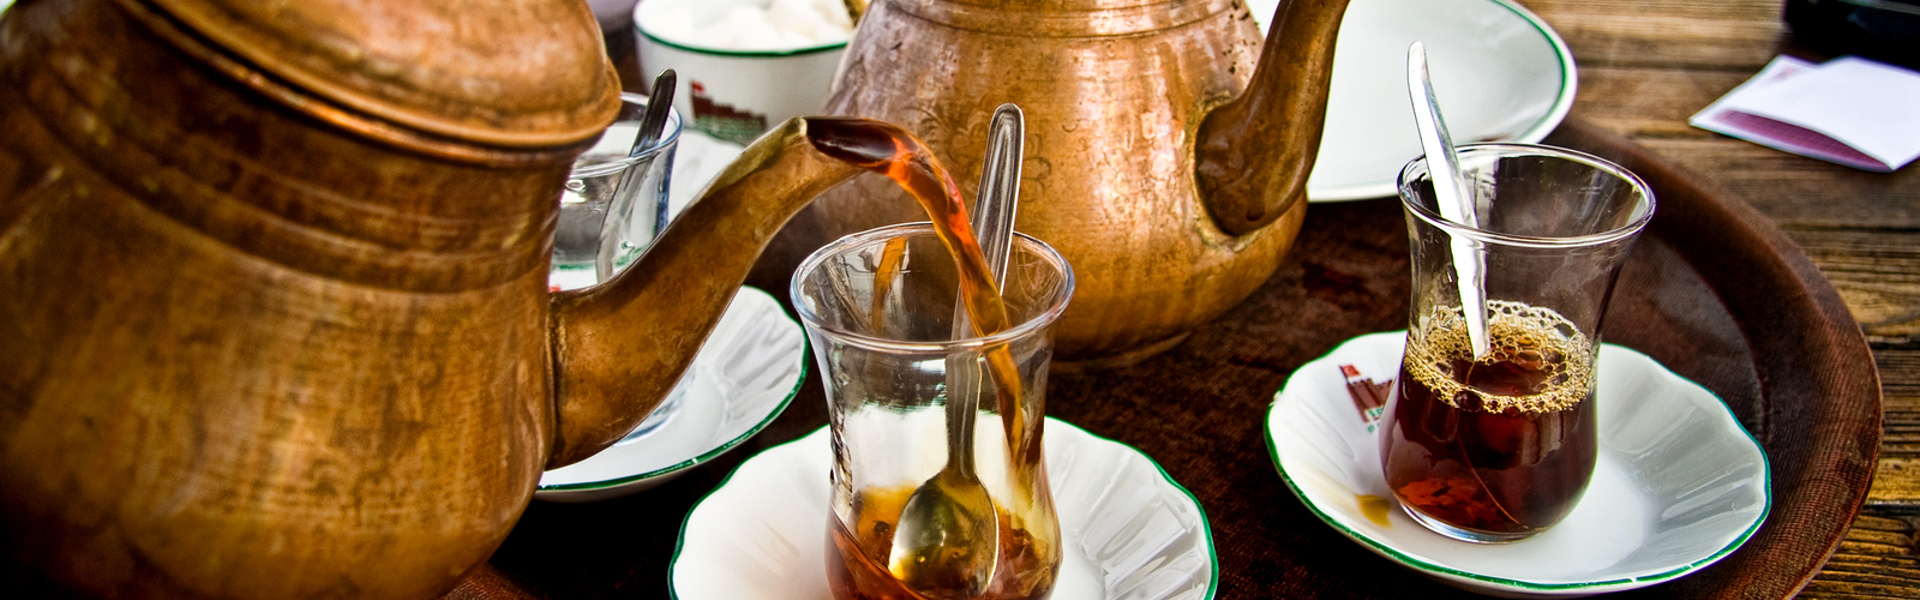 egypt-tea